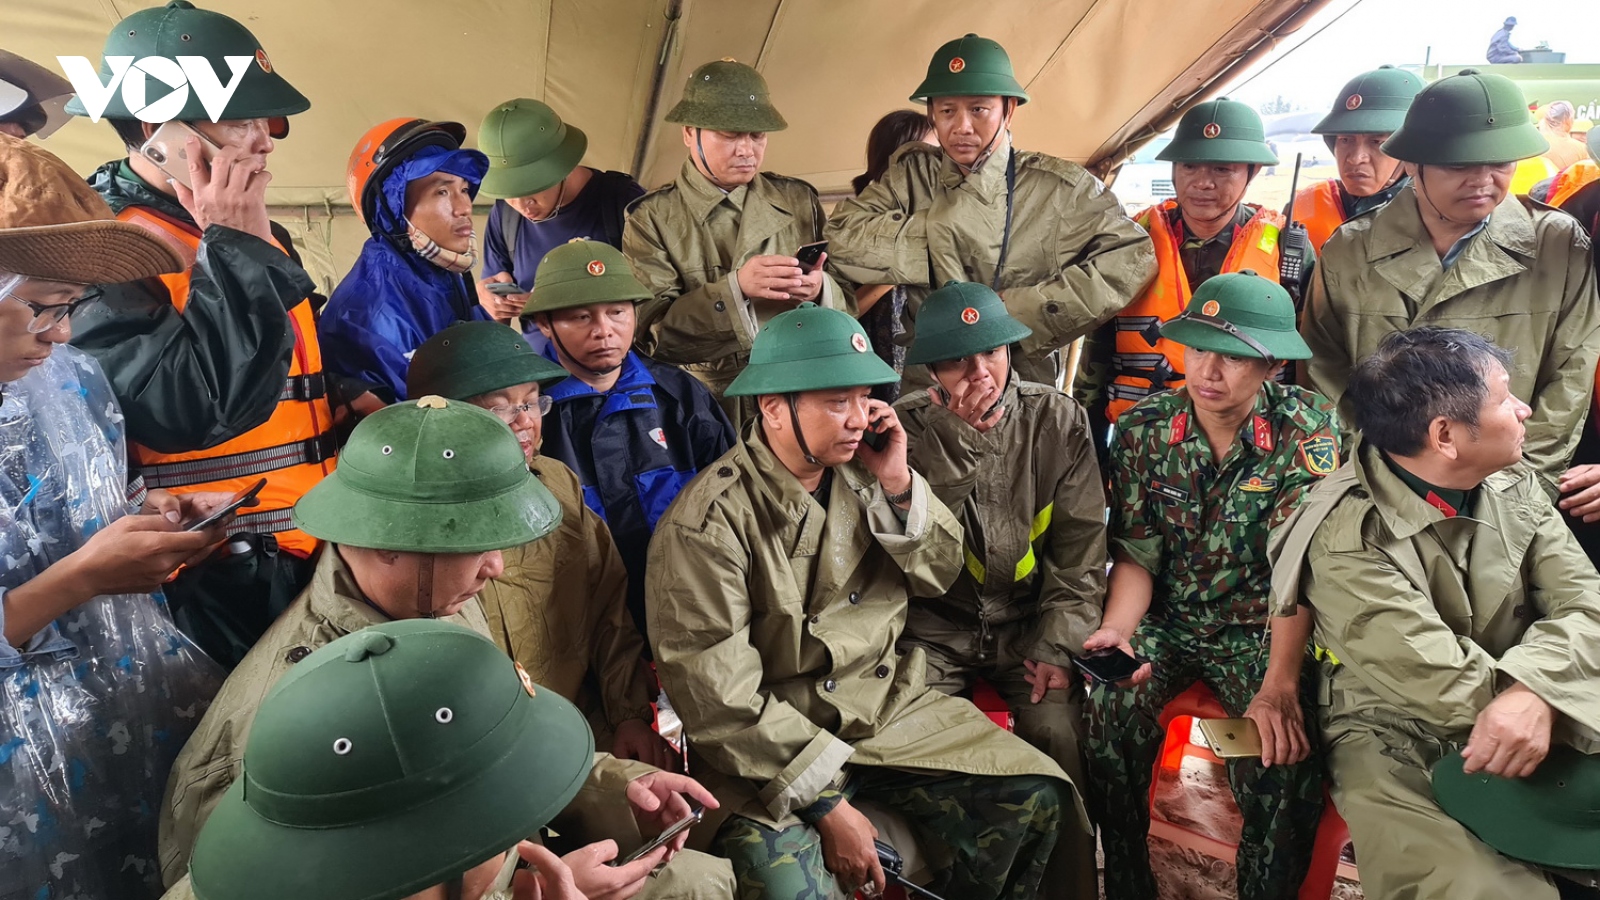 8 cơn bão đổ vào miền Trung: Quân đội cùng dân vượt qua gian khó 